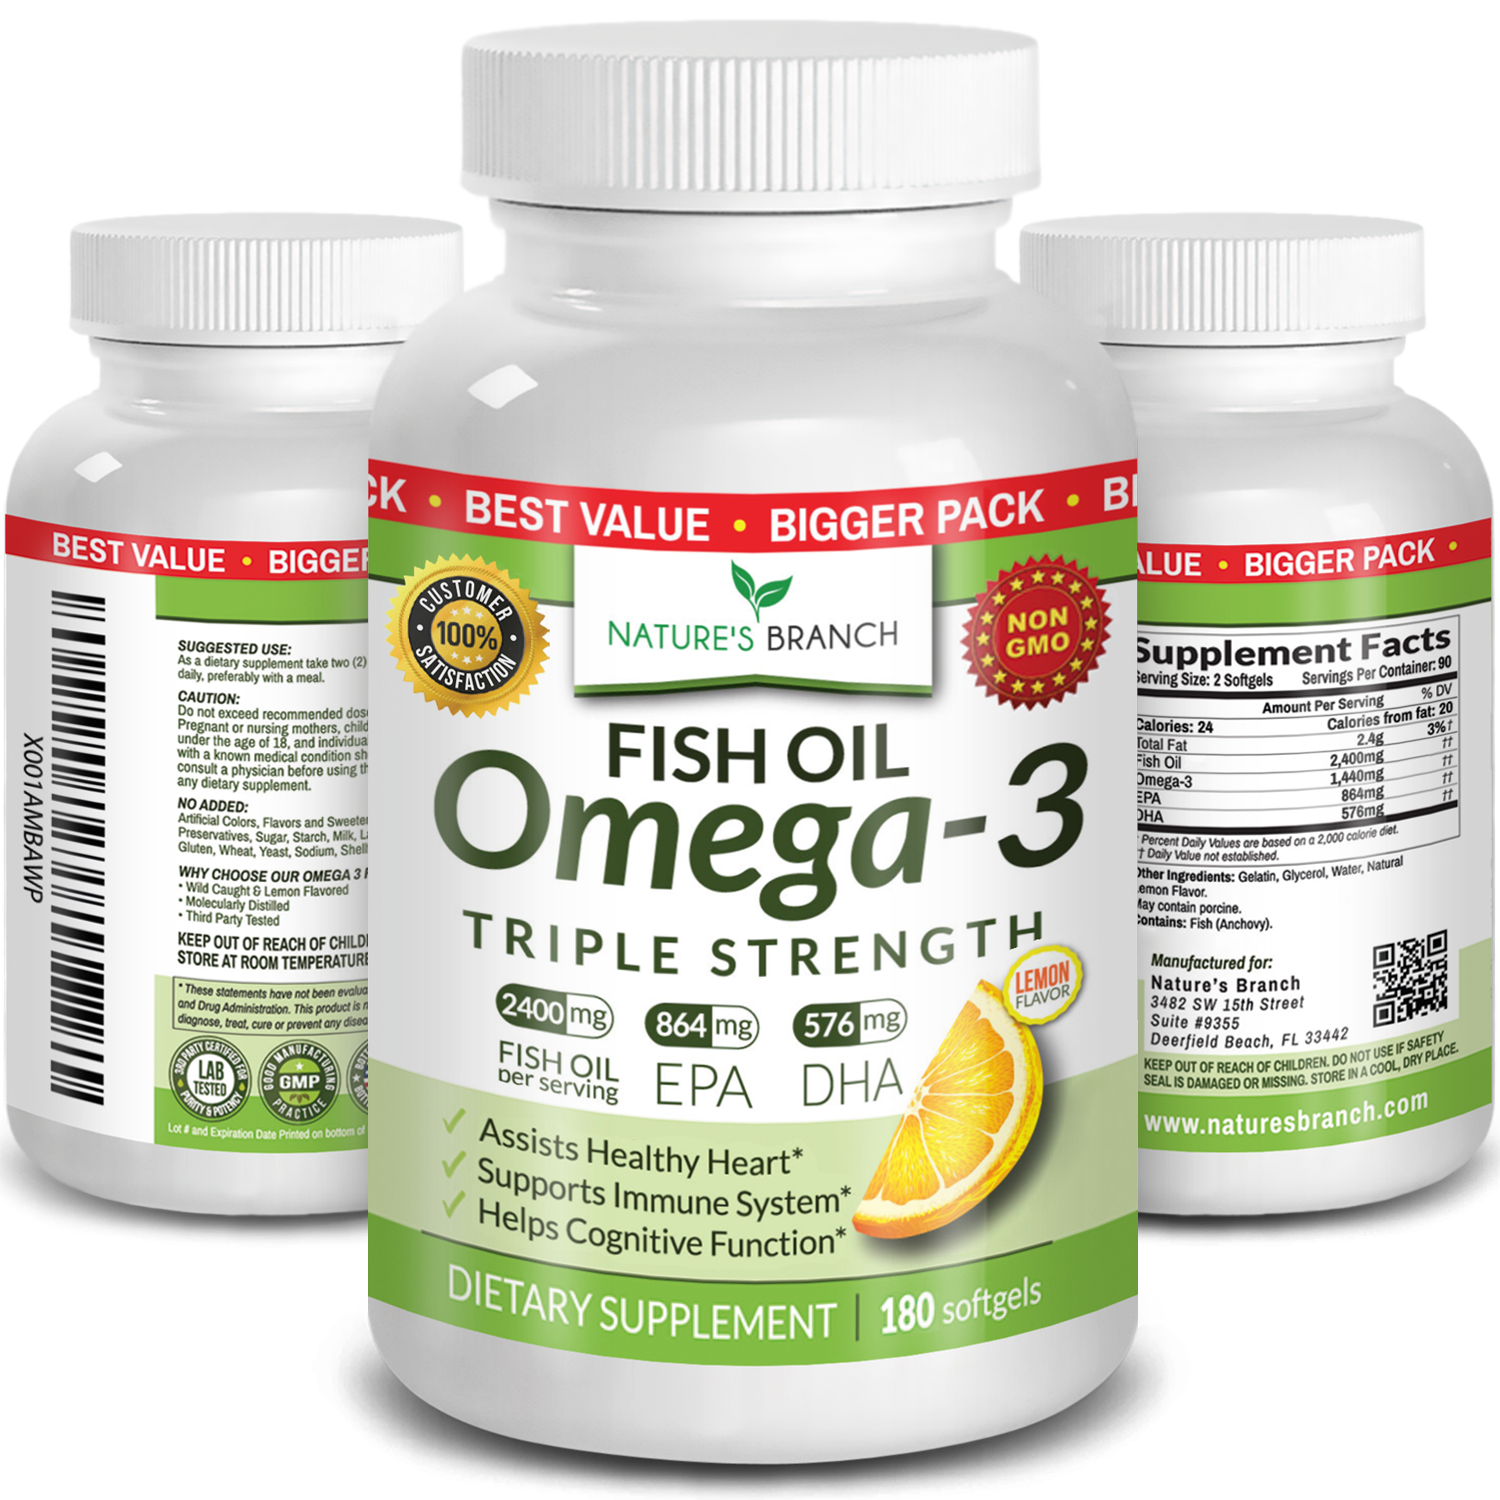 Nature's Branch Omega 3 Fish Oil 180 softgels supplement bottles